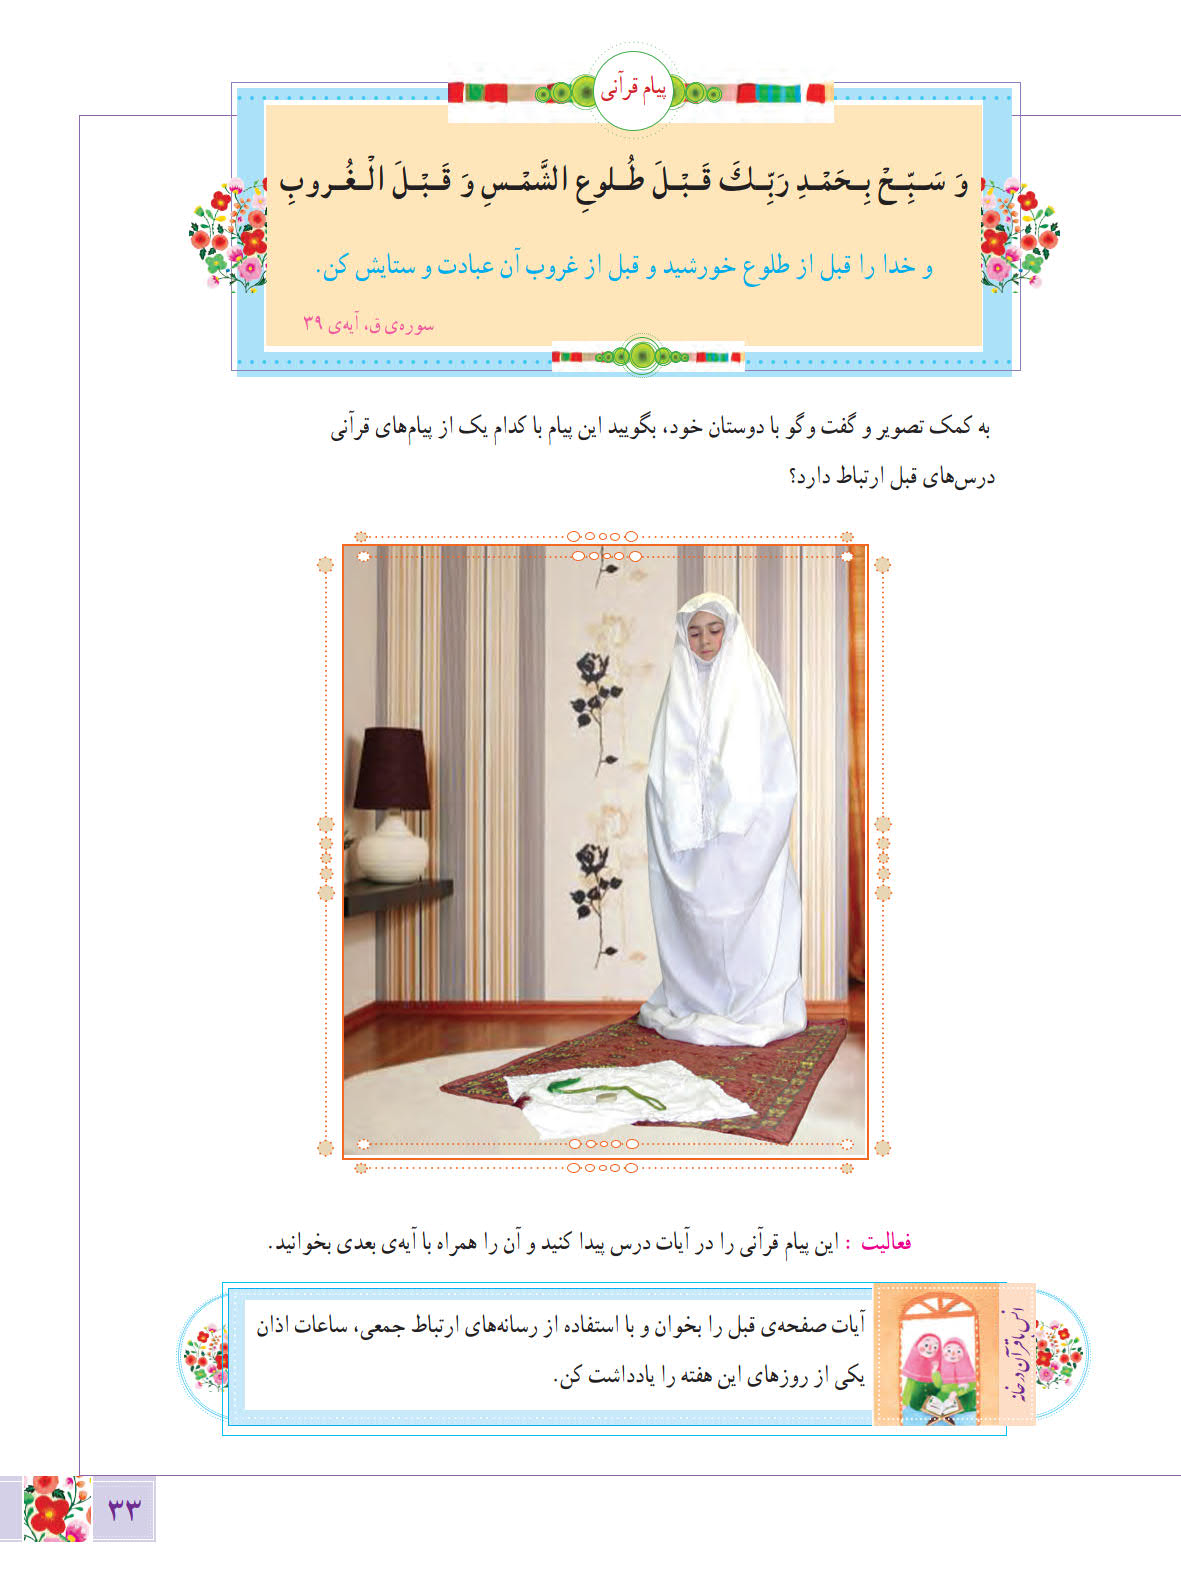 روخوانی و متن و پاسخ صفحه 33 درس پنجم آموزش قرآن ششم ابتدایی - کلاس اینترنتی ما - مومکا - momeka.ir (1)